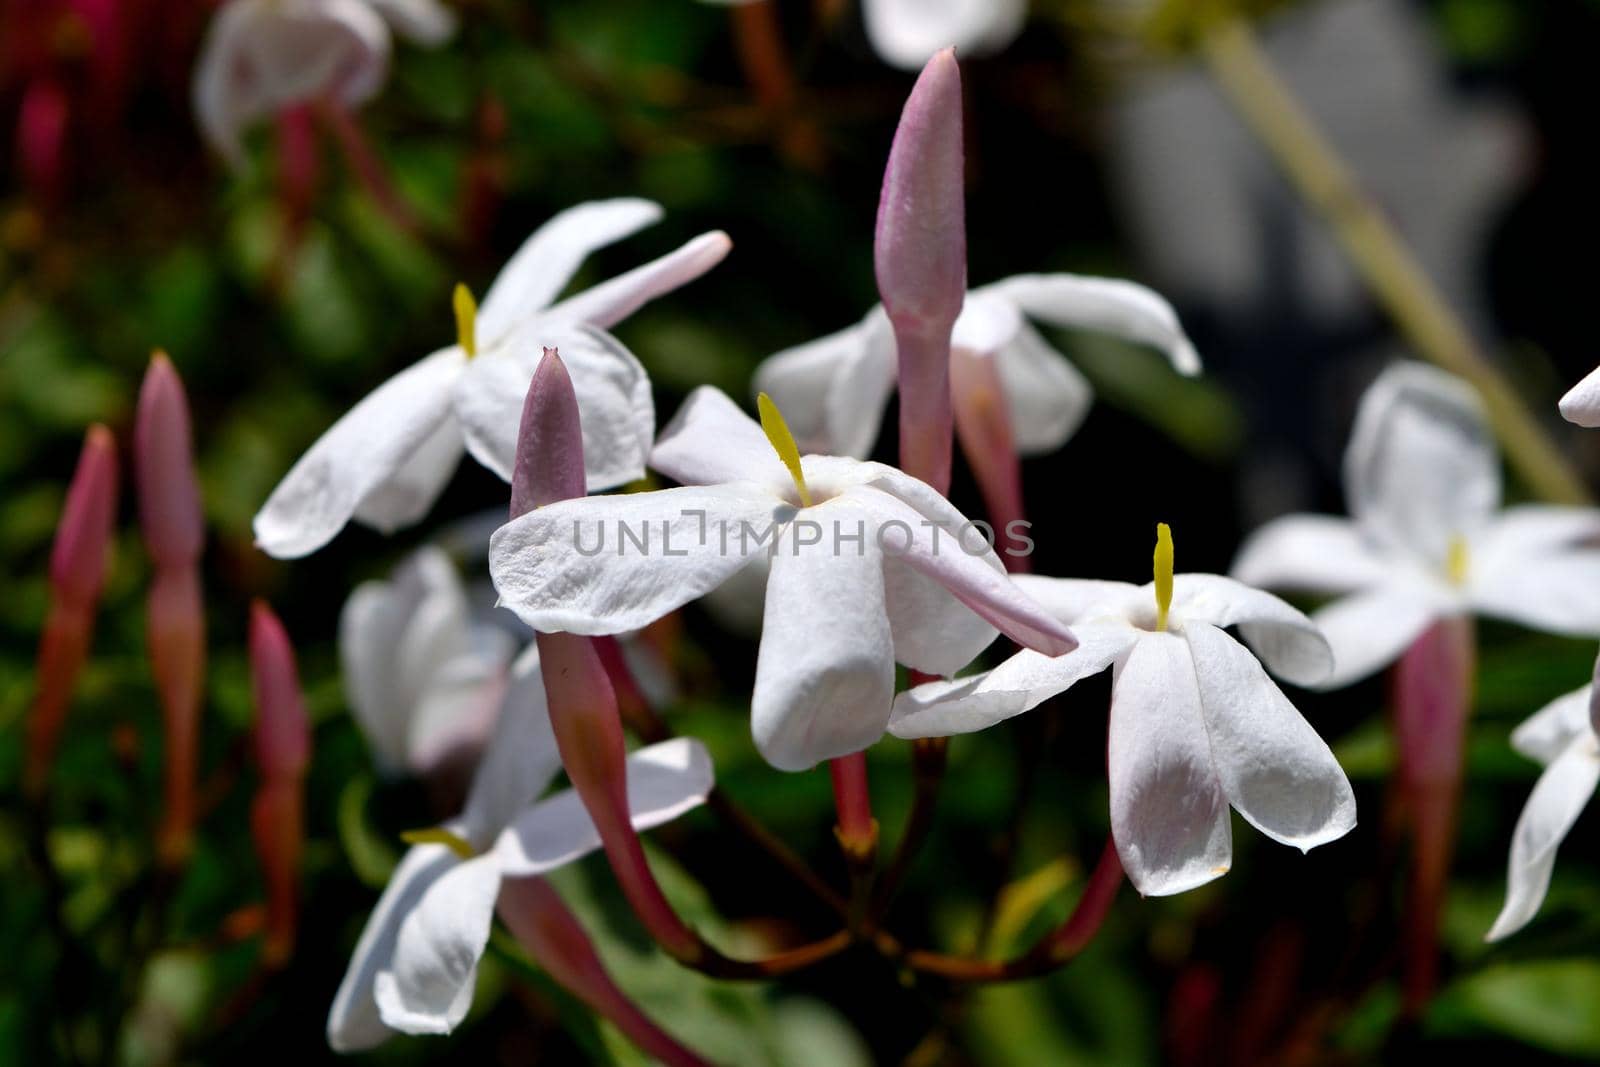 Closeup of beautiful freshly blooming jasmine flowers by silentstock639